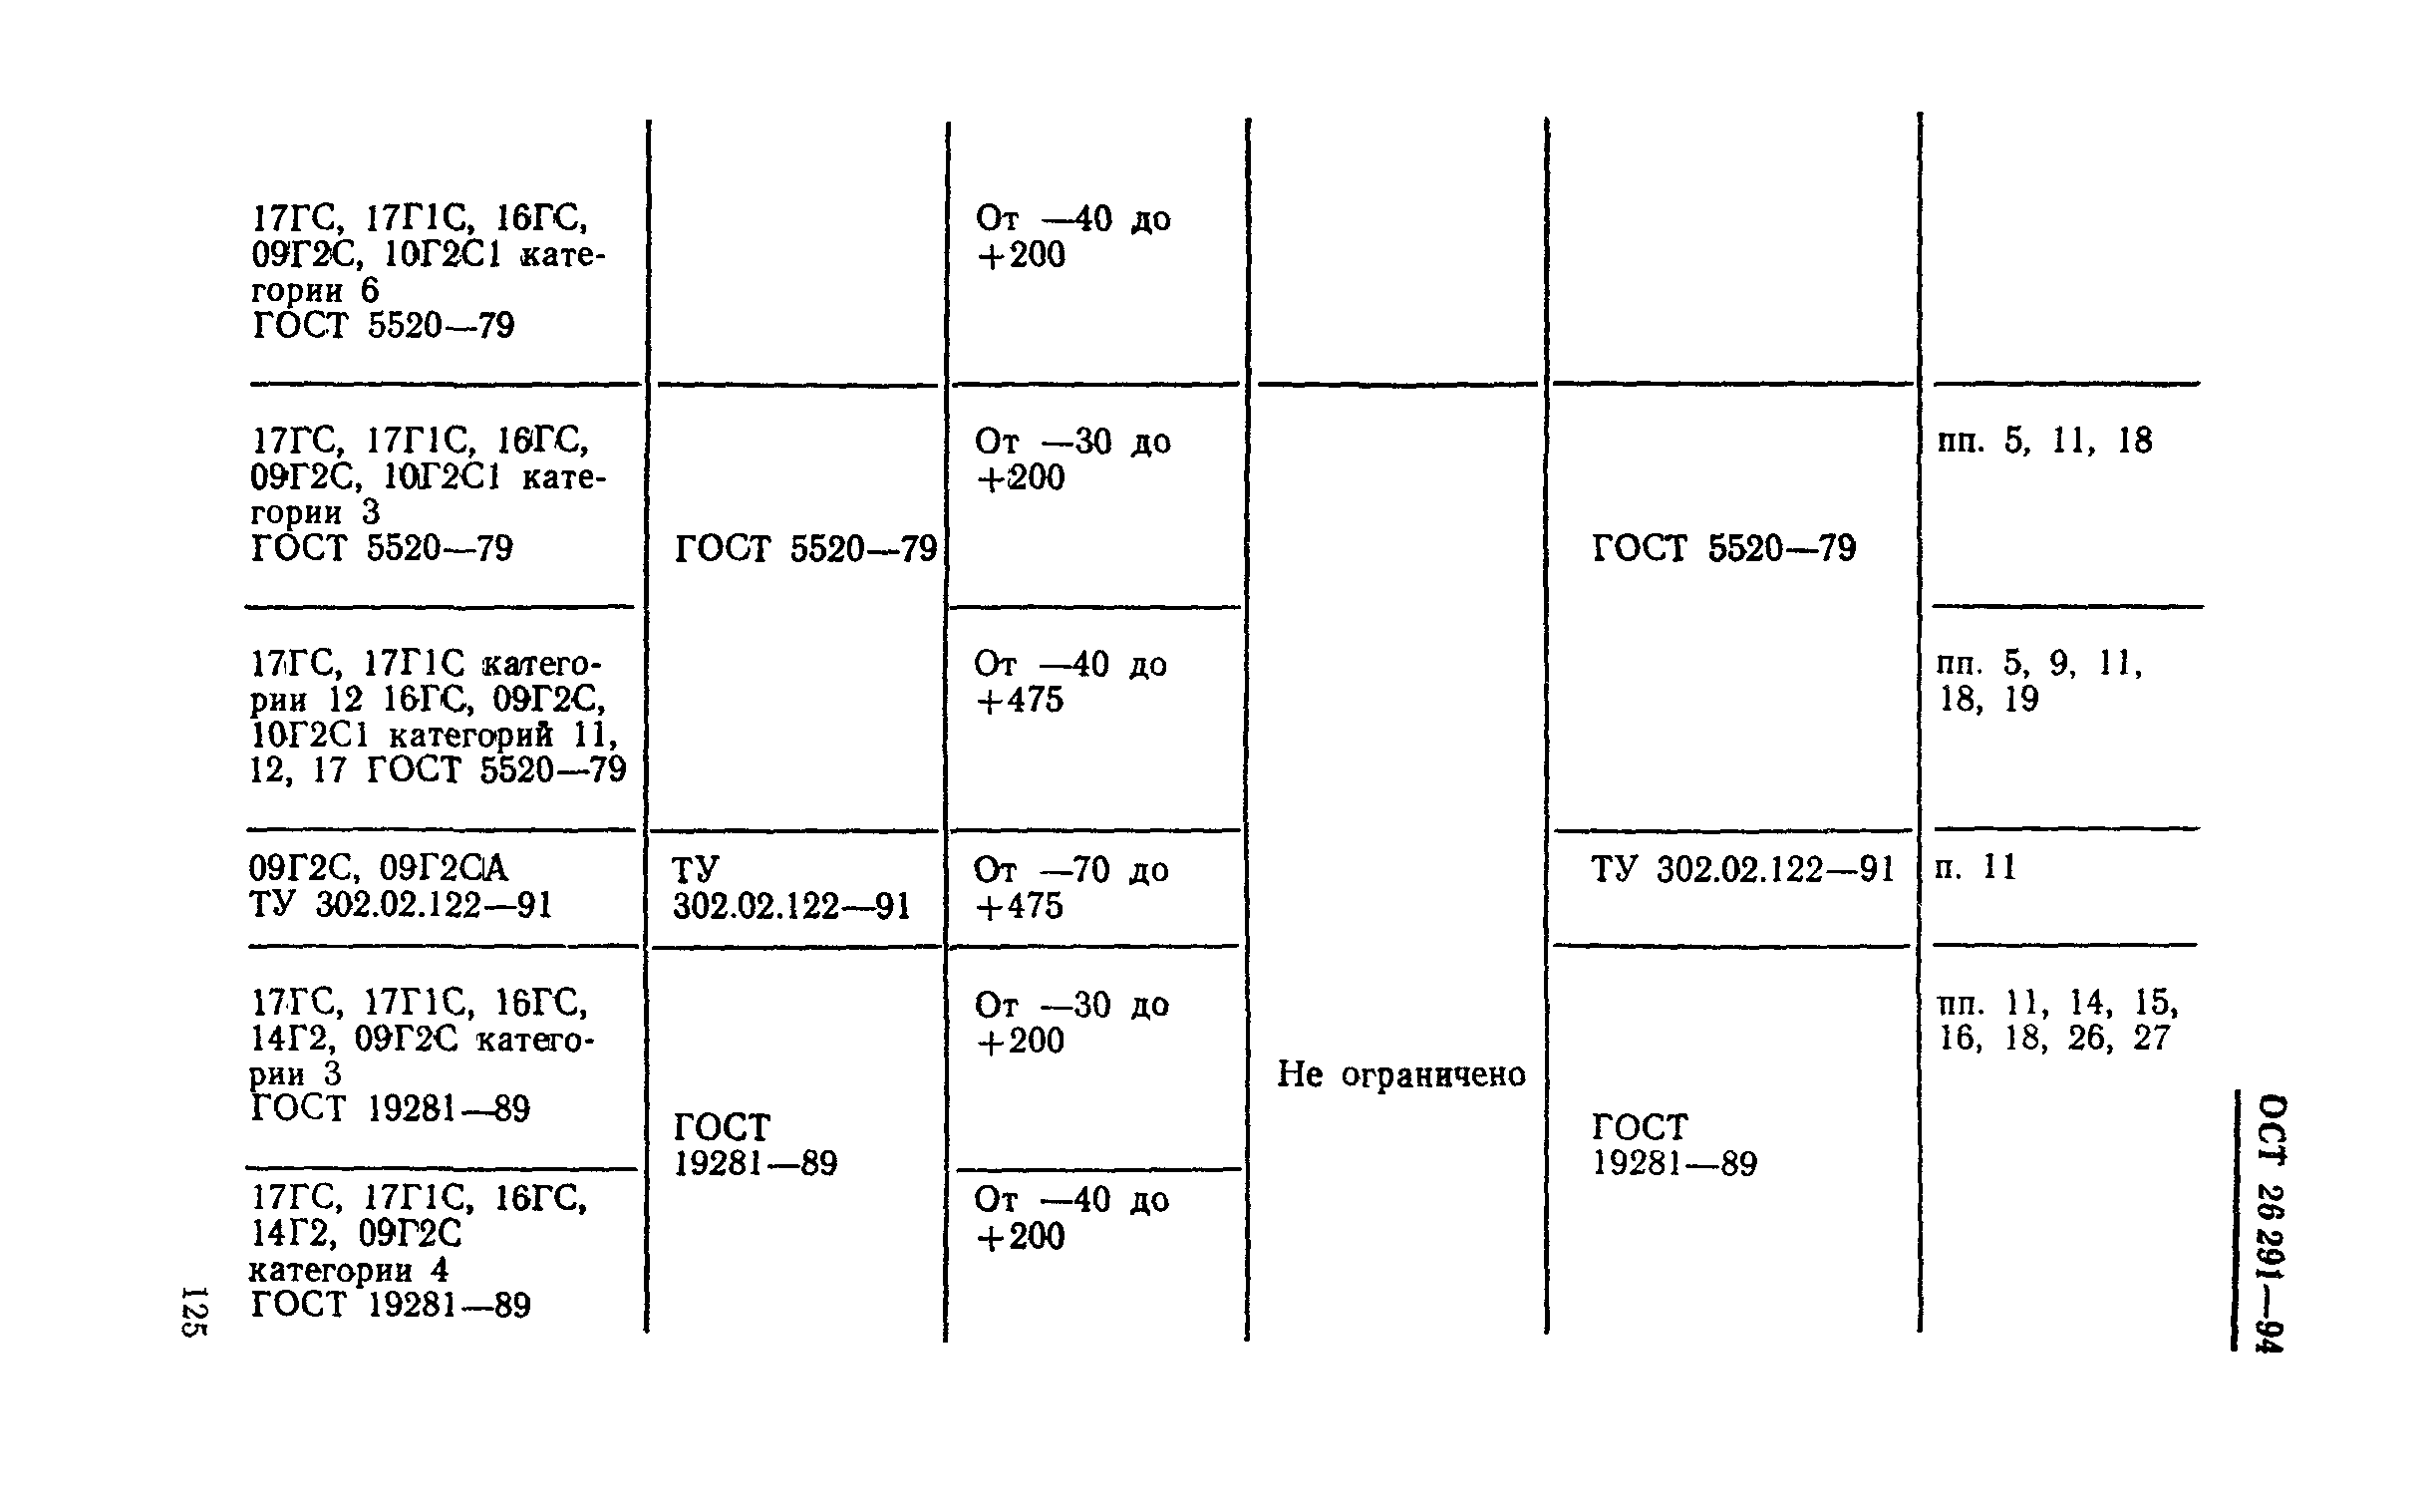 Аналоги марок сталей в таблицах соответствий